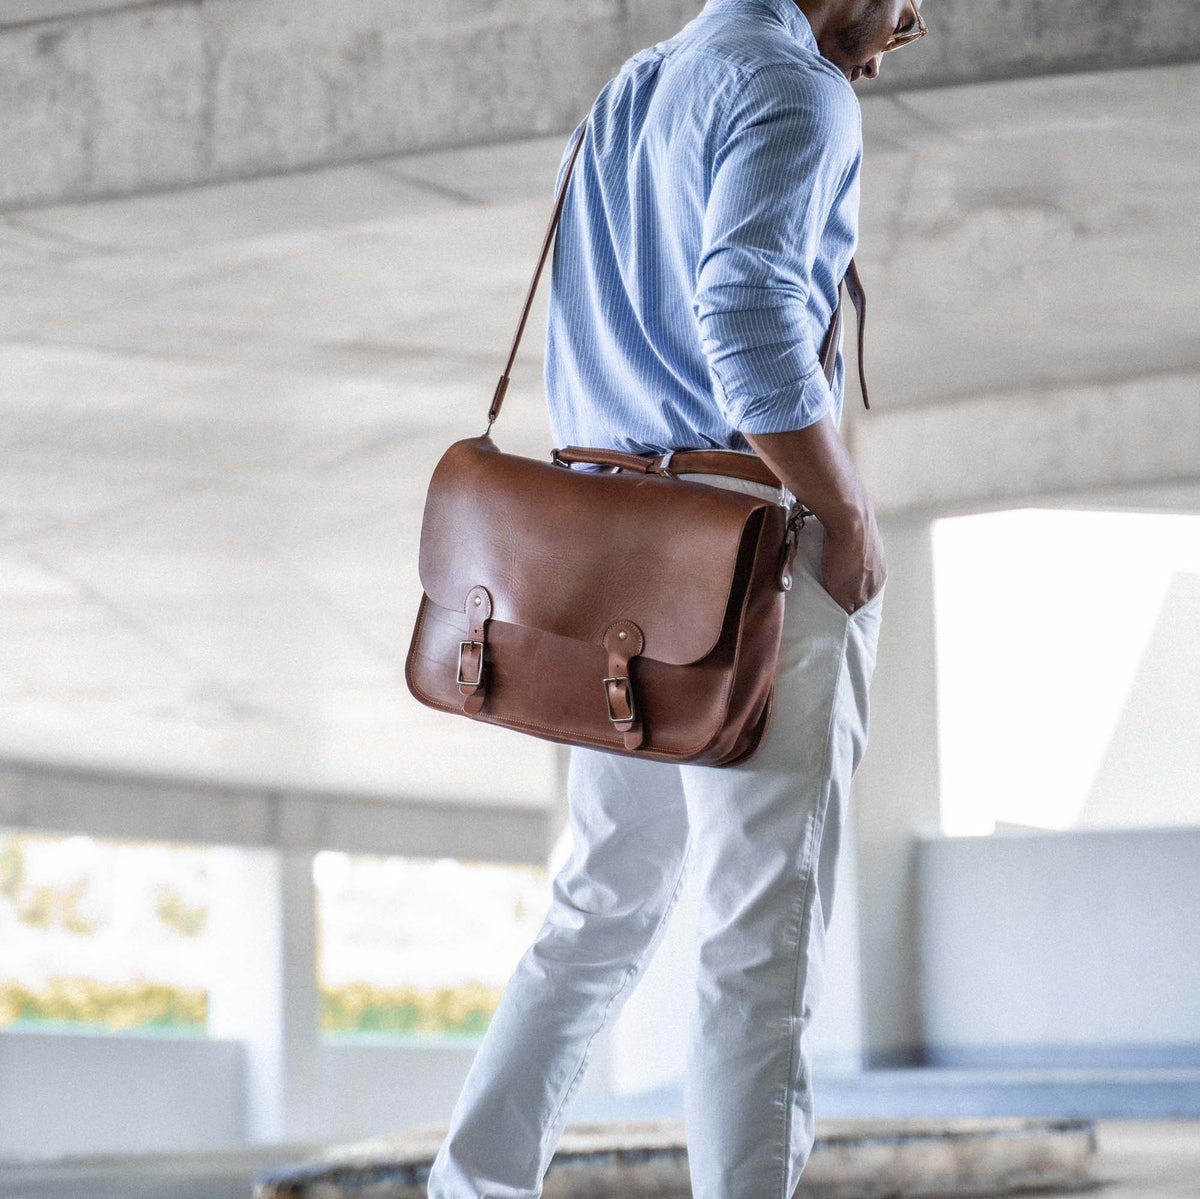 Leather shoulder bag briefcase carry on messenger bag leather